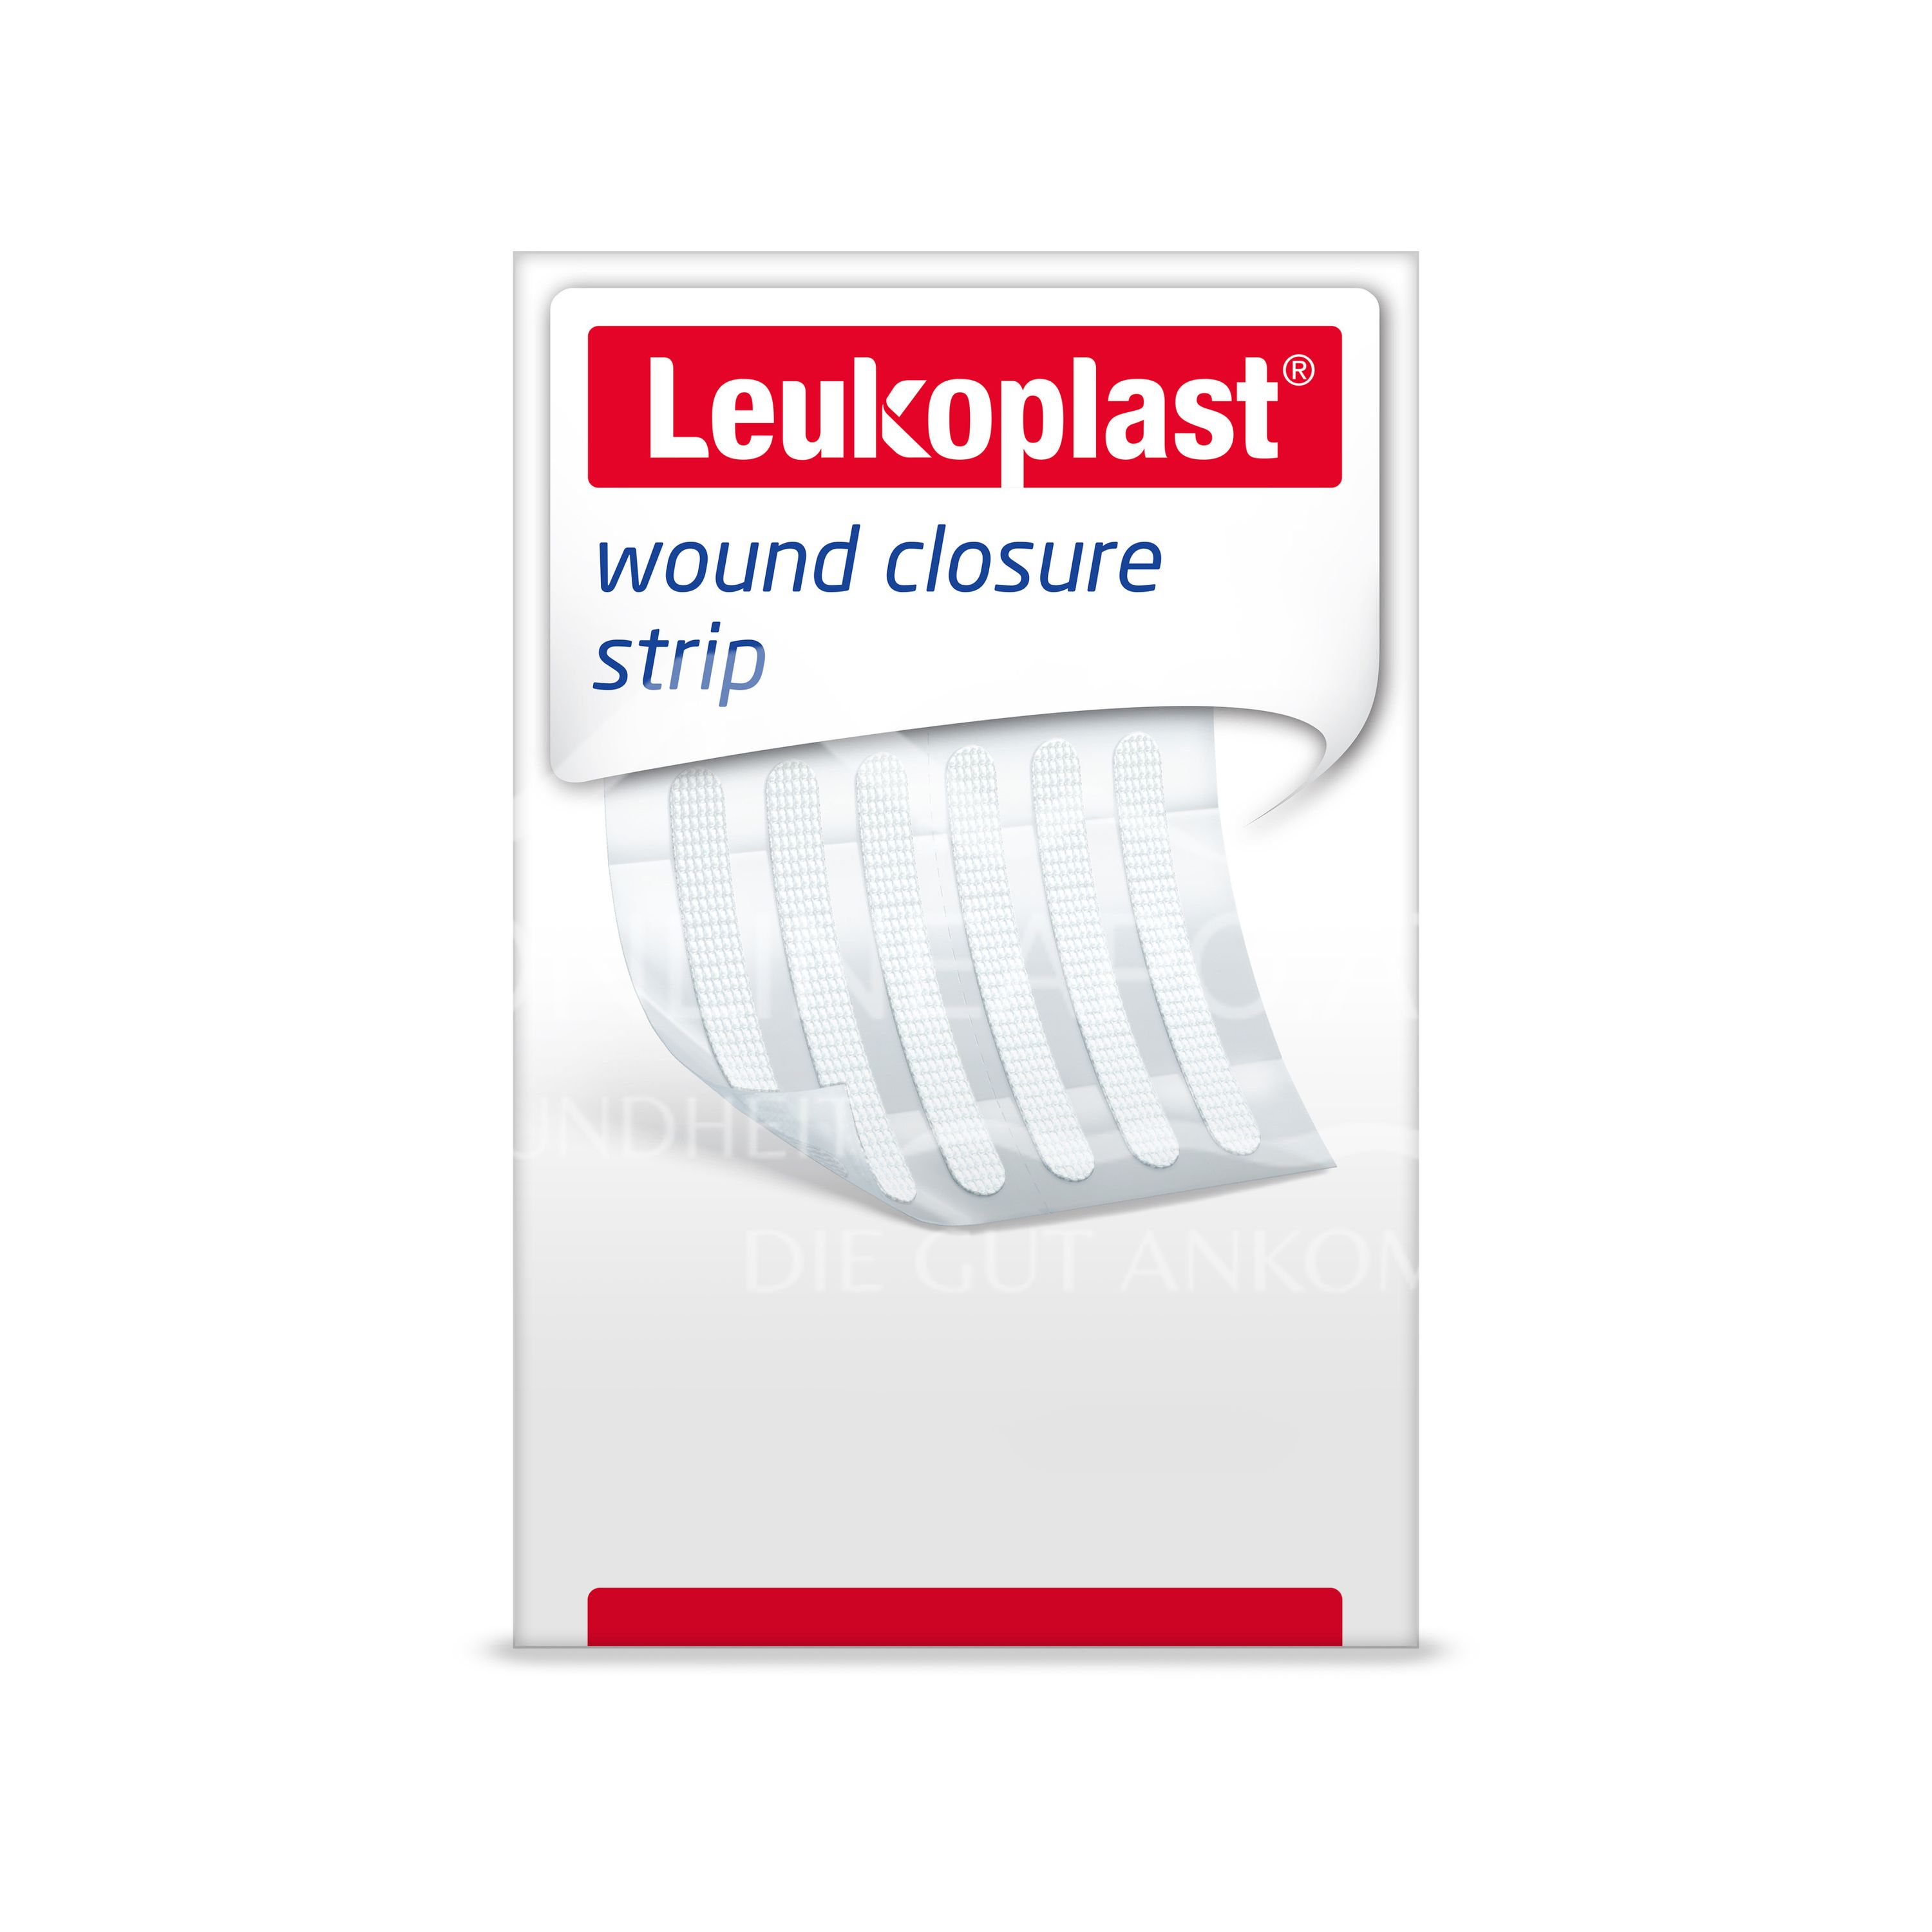 Leukoplast wound closure strip 3 x 75mm